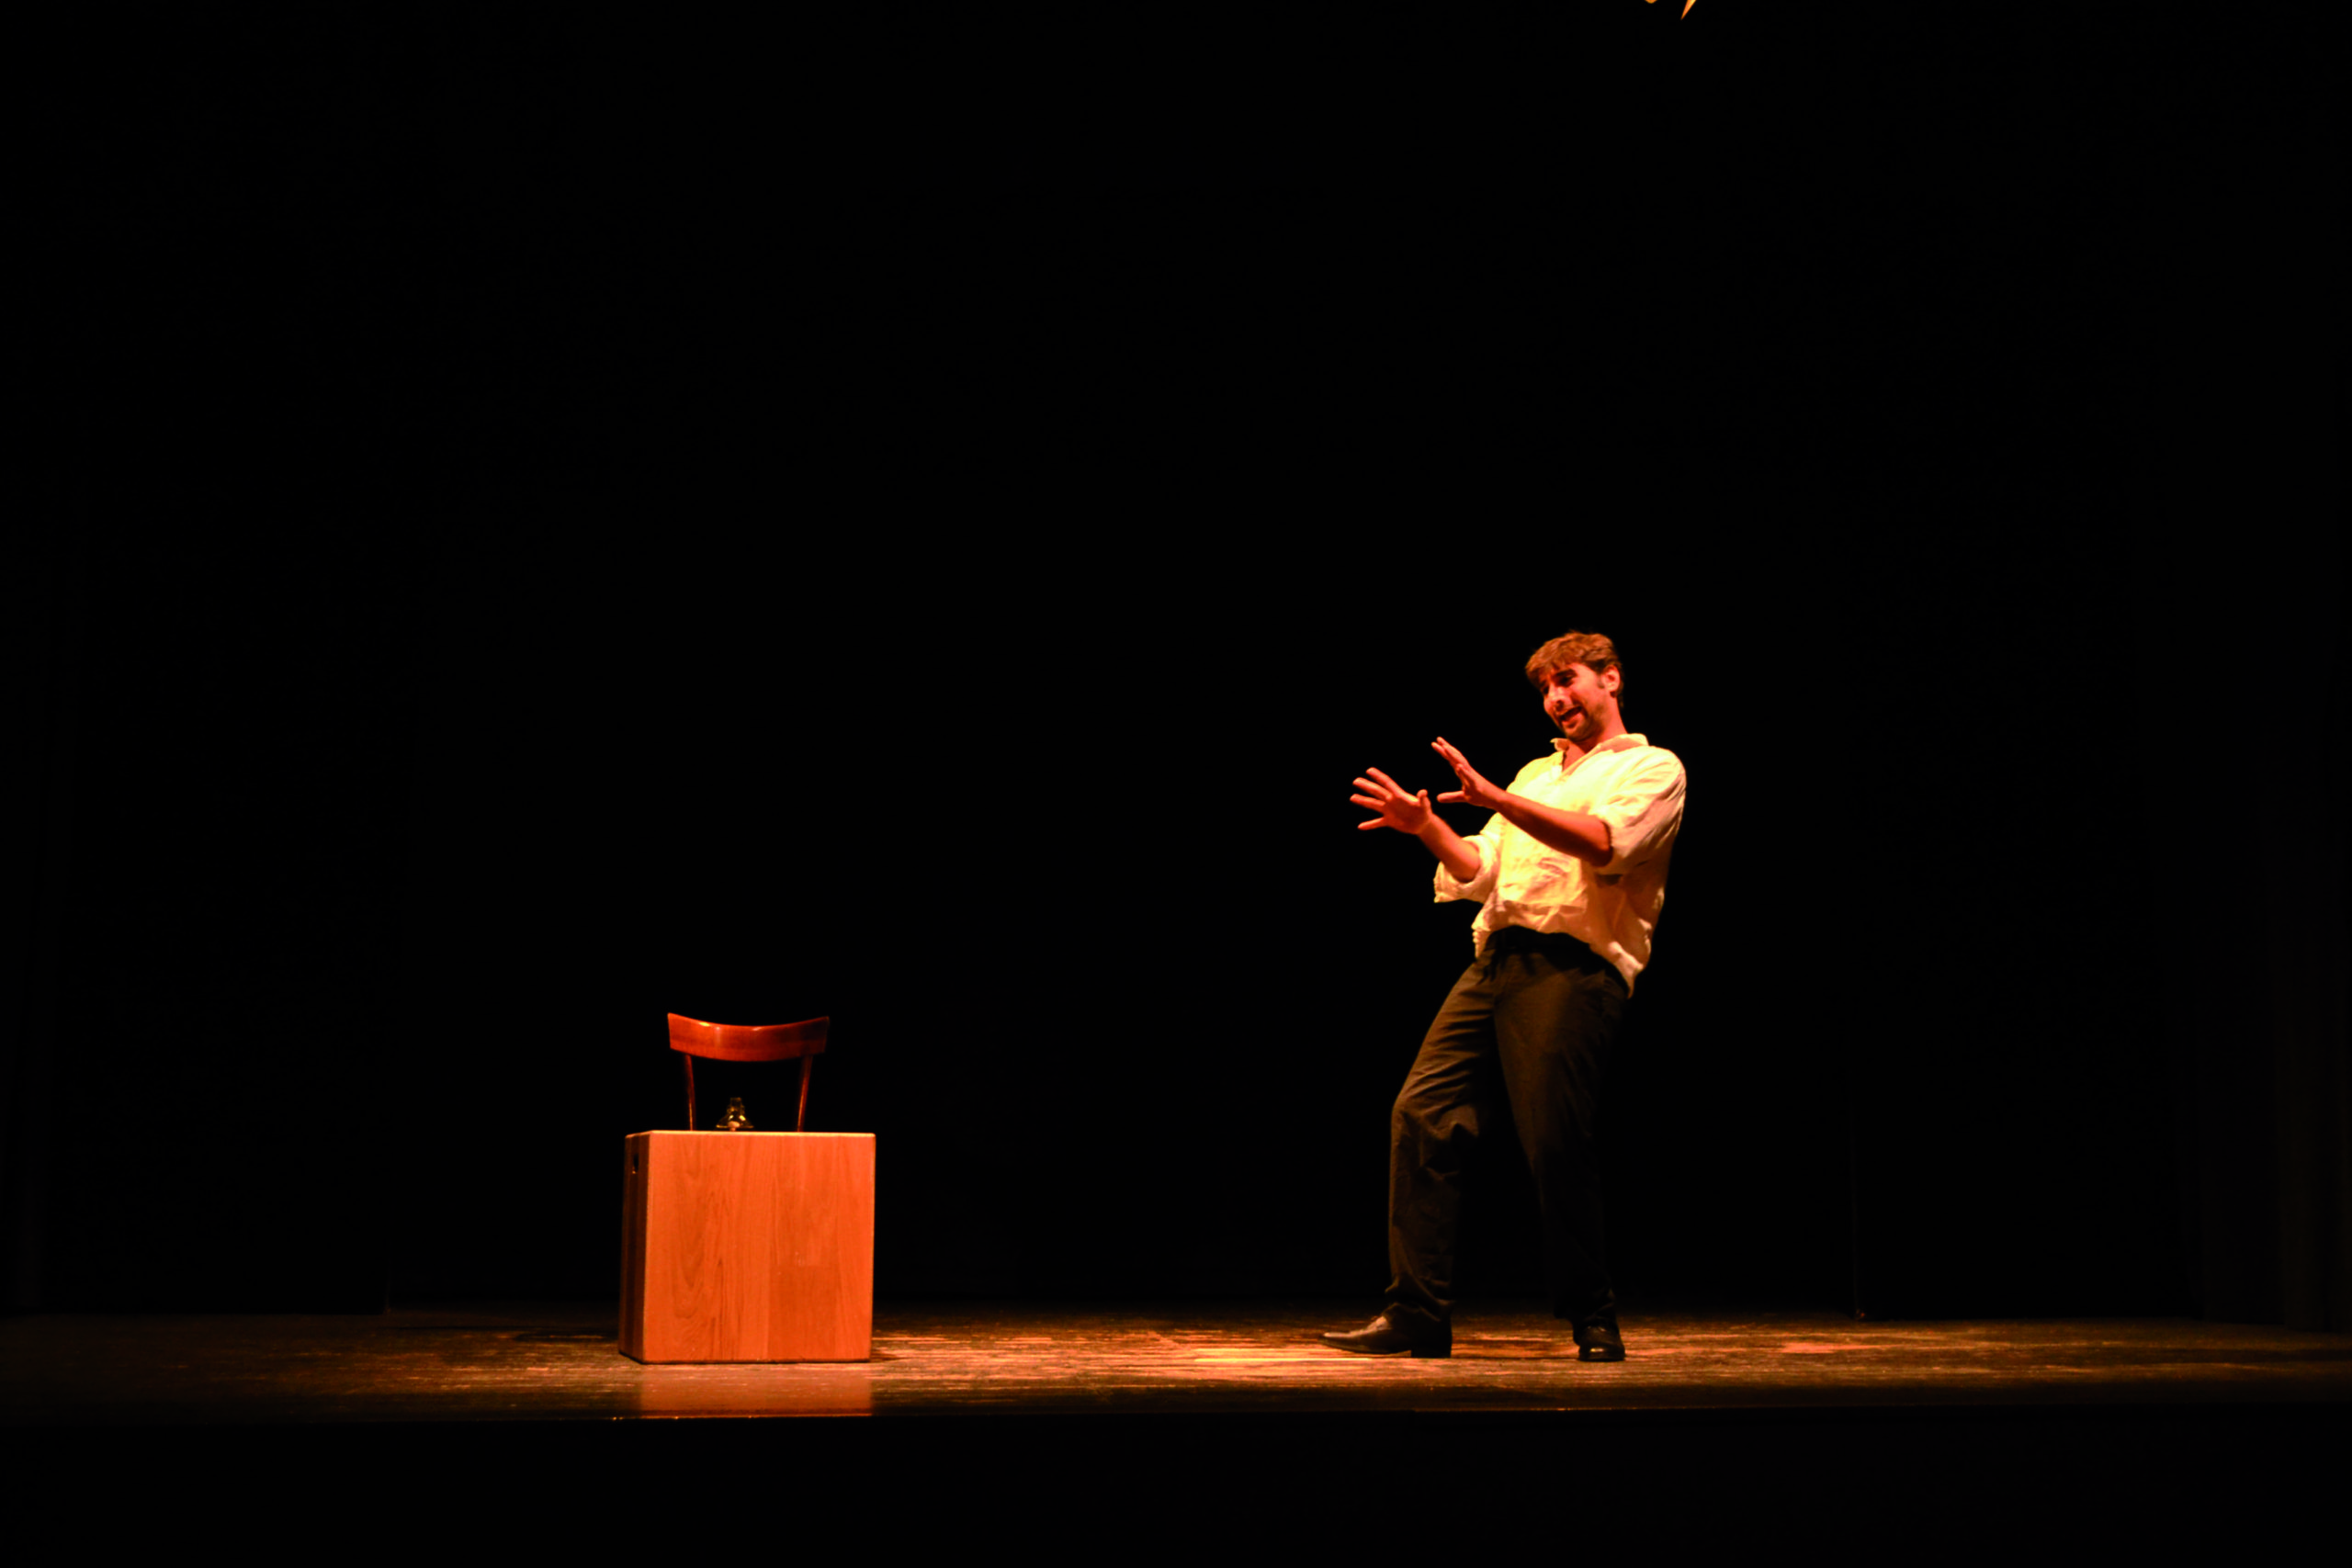 “Rukelie” vince l’ottava edizione del Minimo Teatro Festival di Palermo